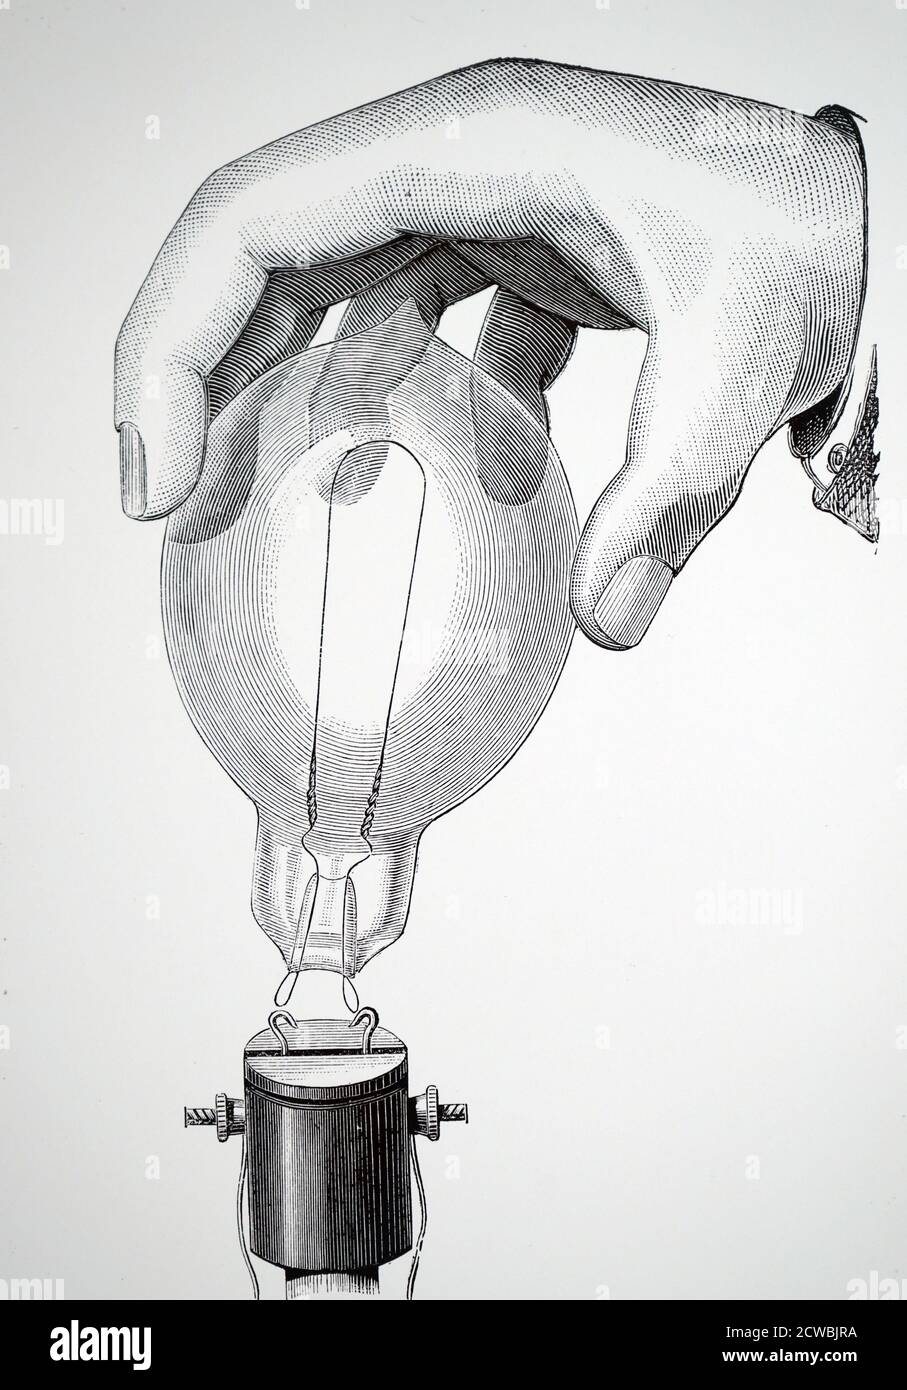 Gravur, die eine Karbon-Glühlampe zeigt, die durch Drahtschlaufen mit Haken an einem Halter verbunden ist (Swinburne Globe). Stockfoto